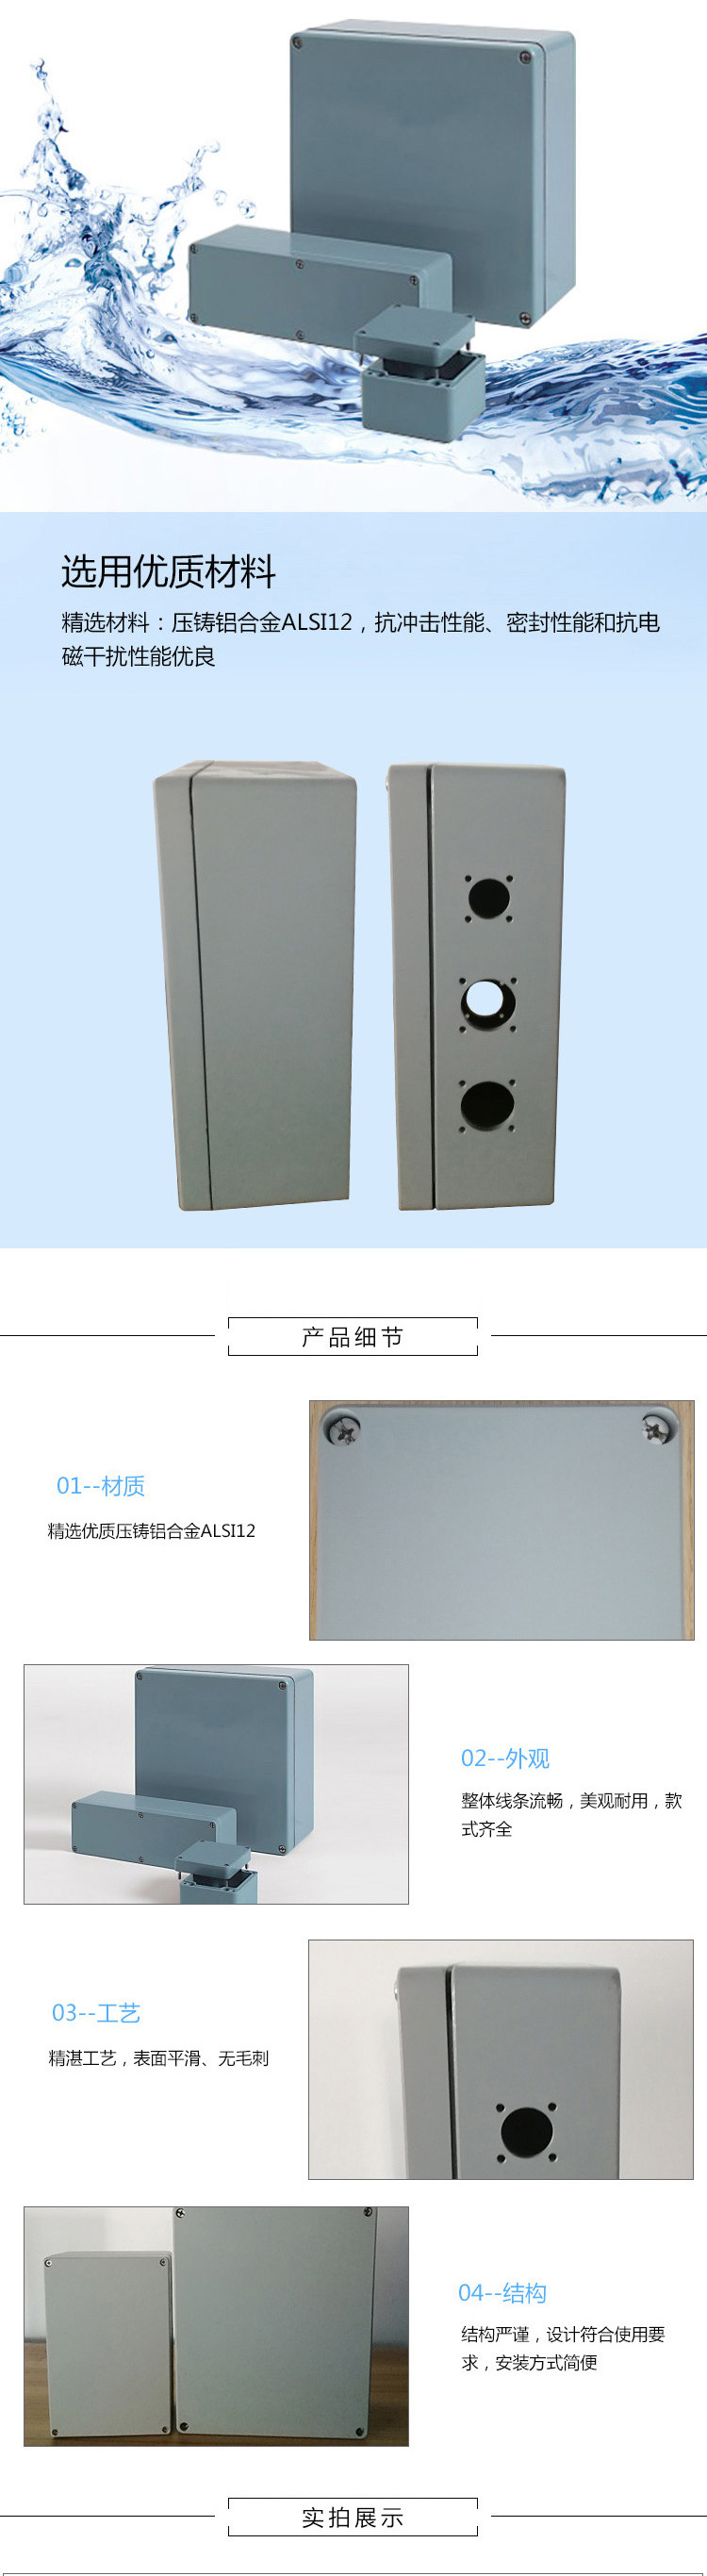 AL系列高端机械设备工业自动化设备用耐腐蚀耐酸碱防水铸铝盒示例图2